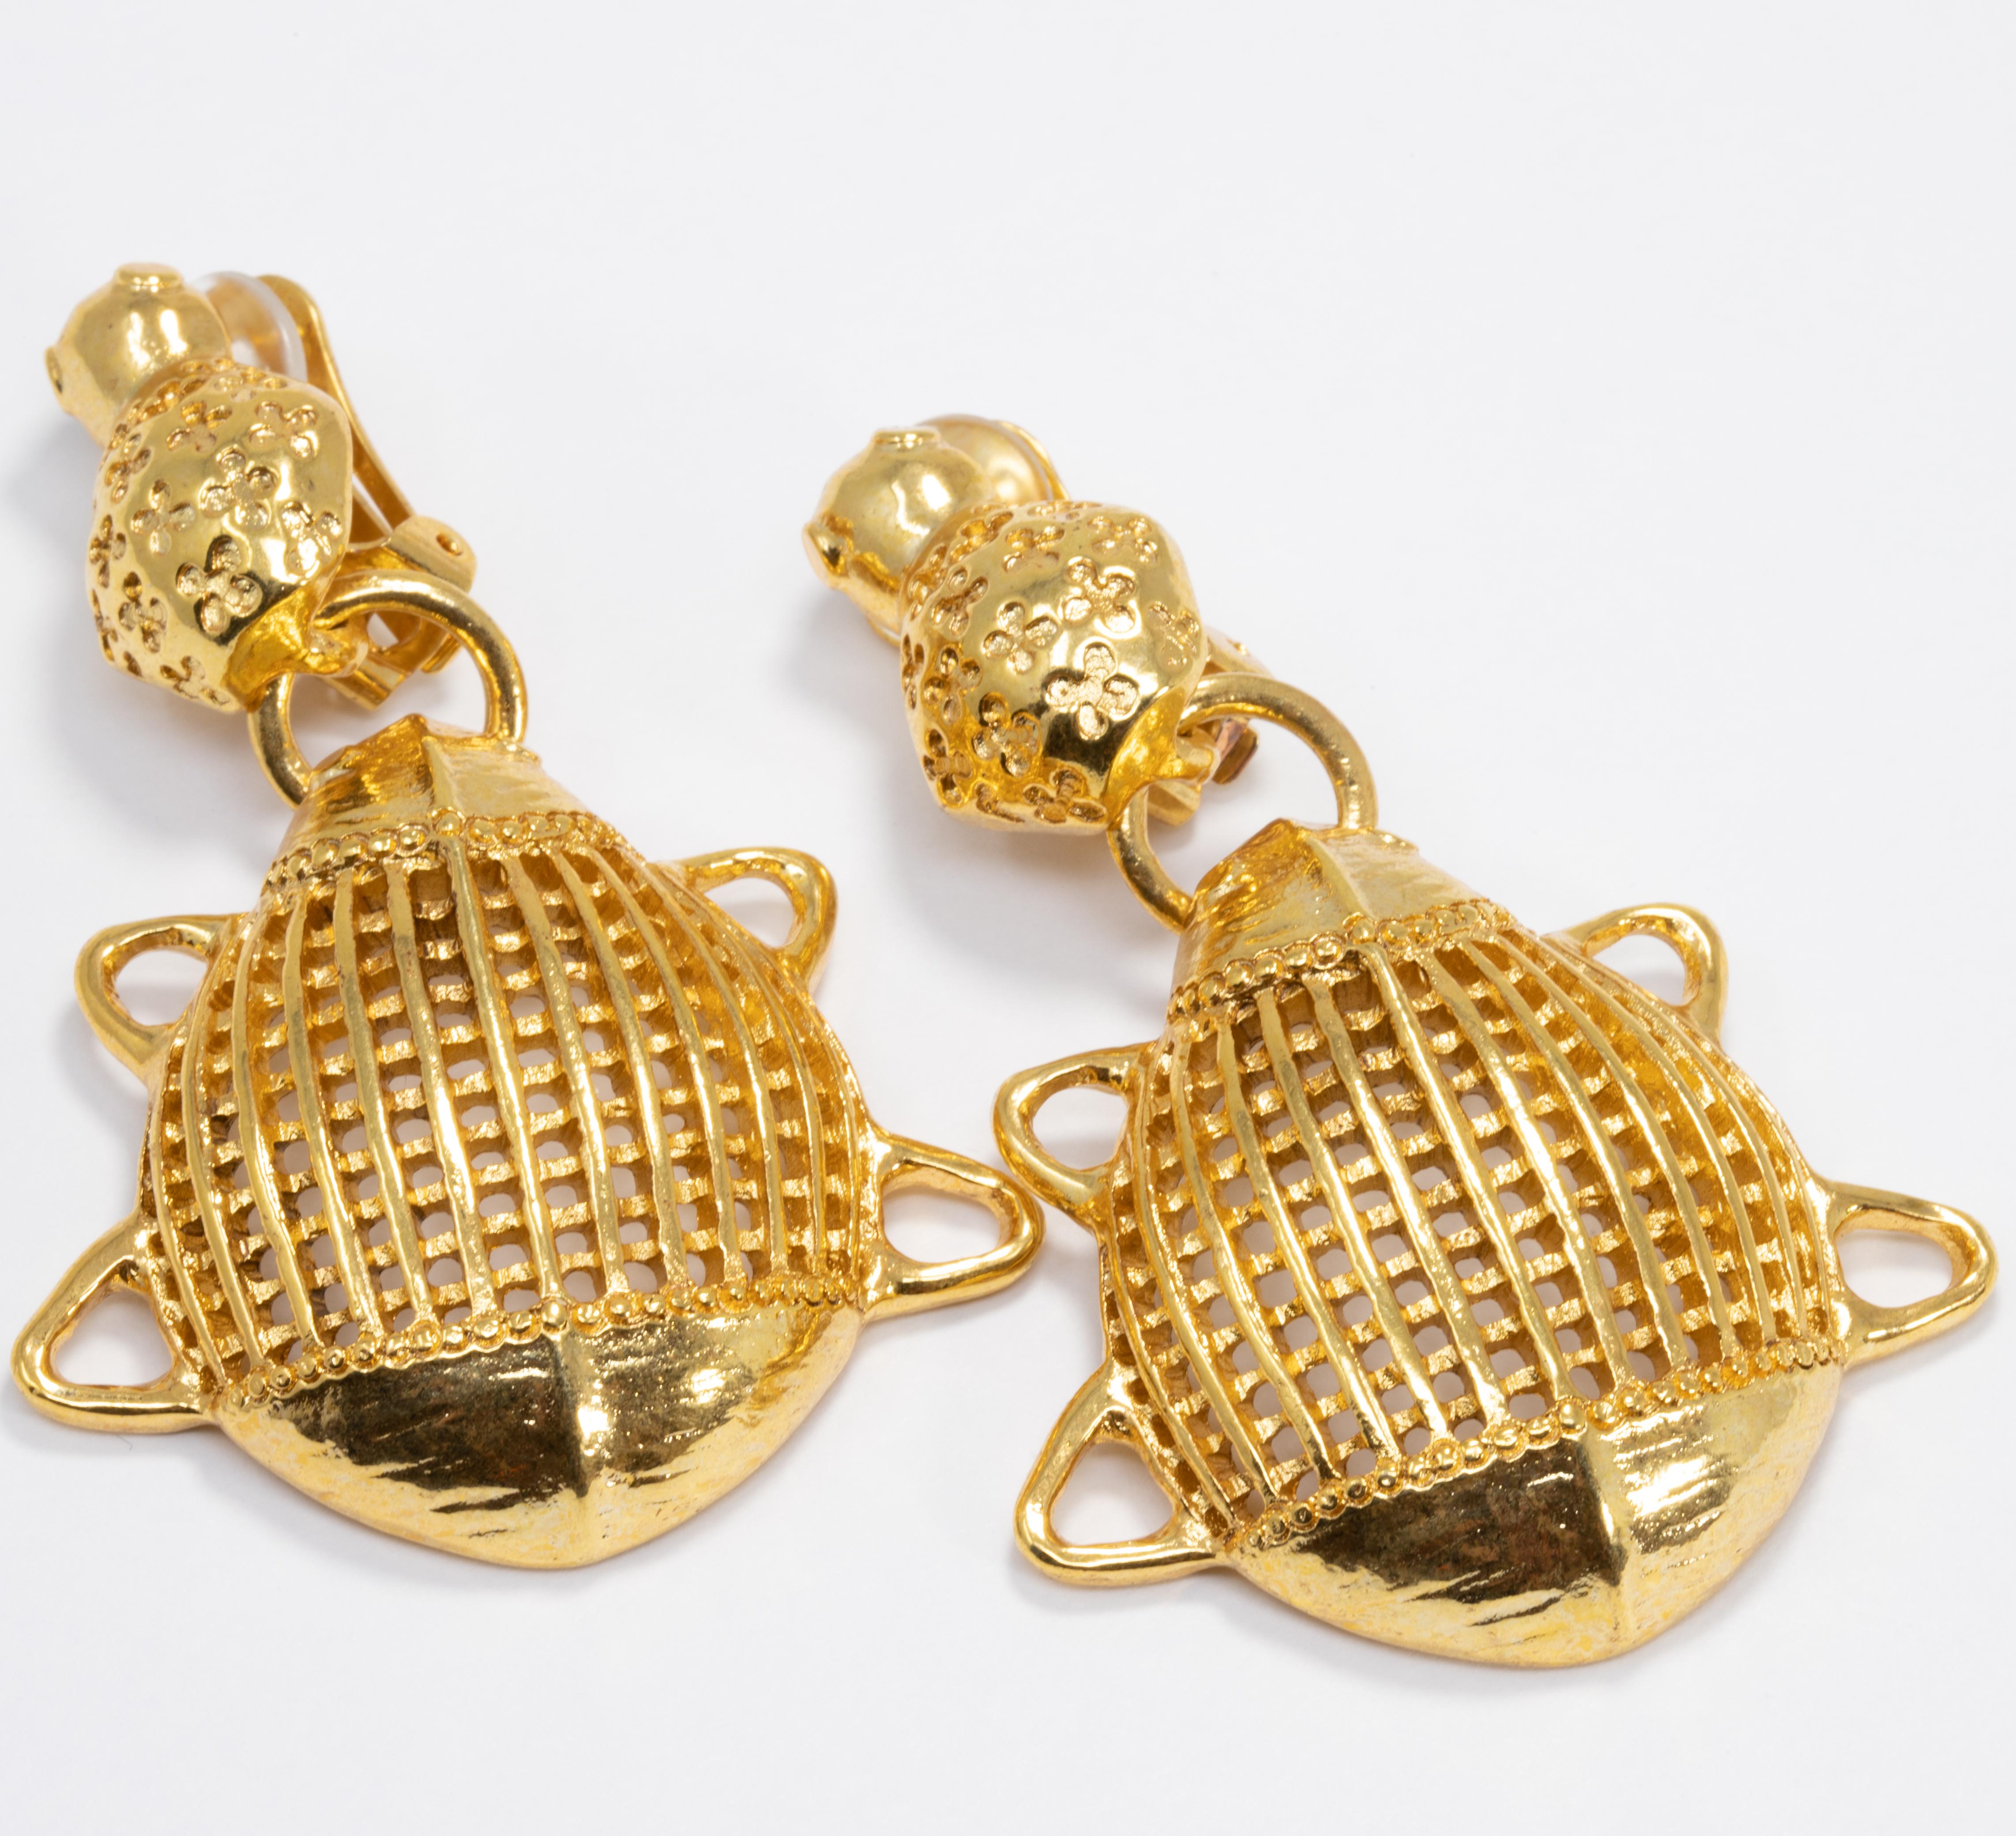 Luxuriöse Clip-Ohrringe im unverkennbaren Stil von Oscar de la Renta. Ein Paar eleganter stilisierter Skarabäen, vergoldet!

Markenzeichen: Oscar de la Renta, Hergestellt in den USA